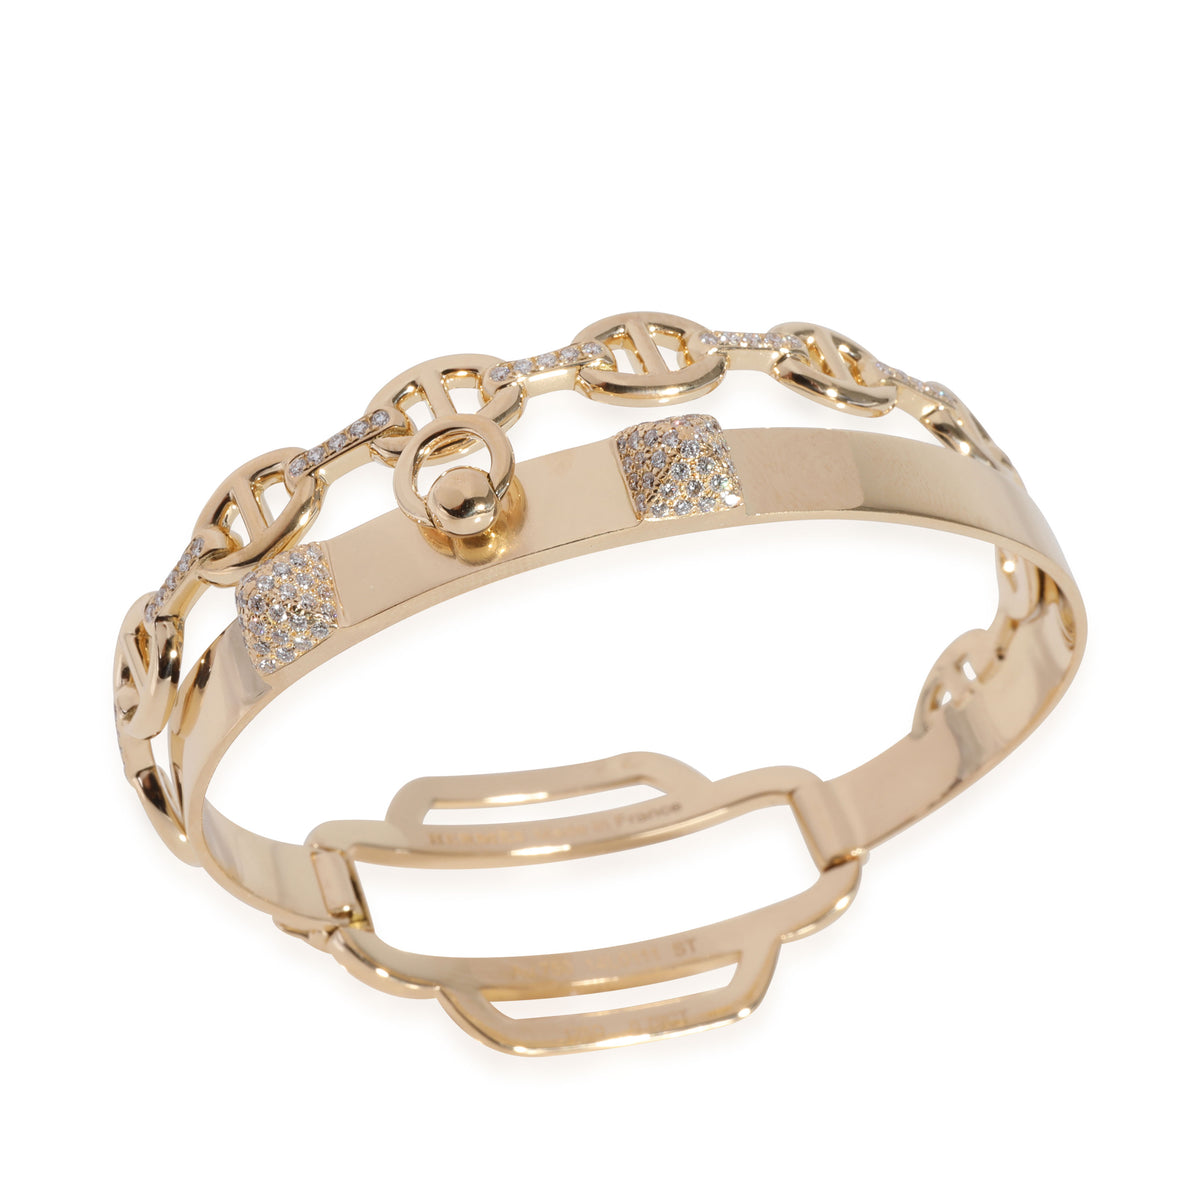 Double Tour Collier De Chien Diamond Bracelet in 18k Yellow Gold 0.79 Ctw